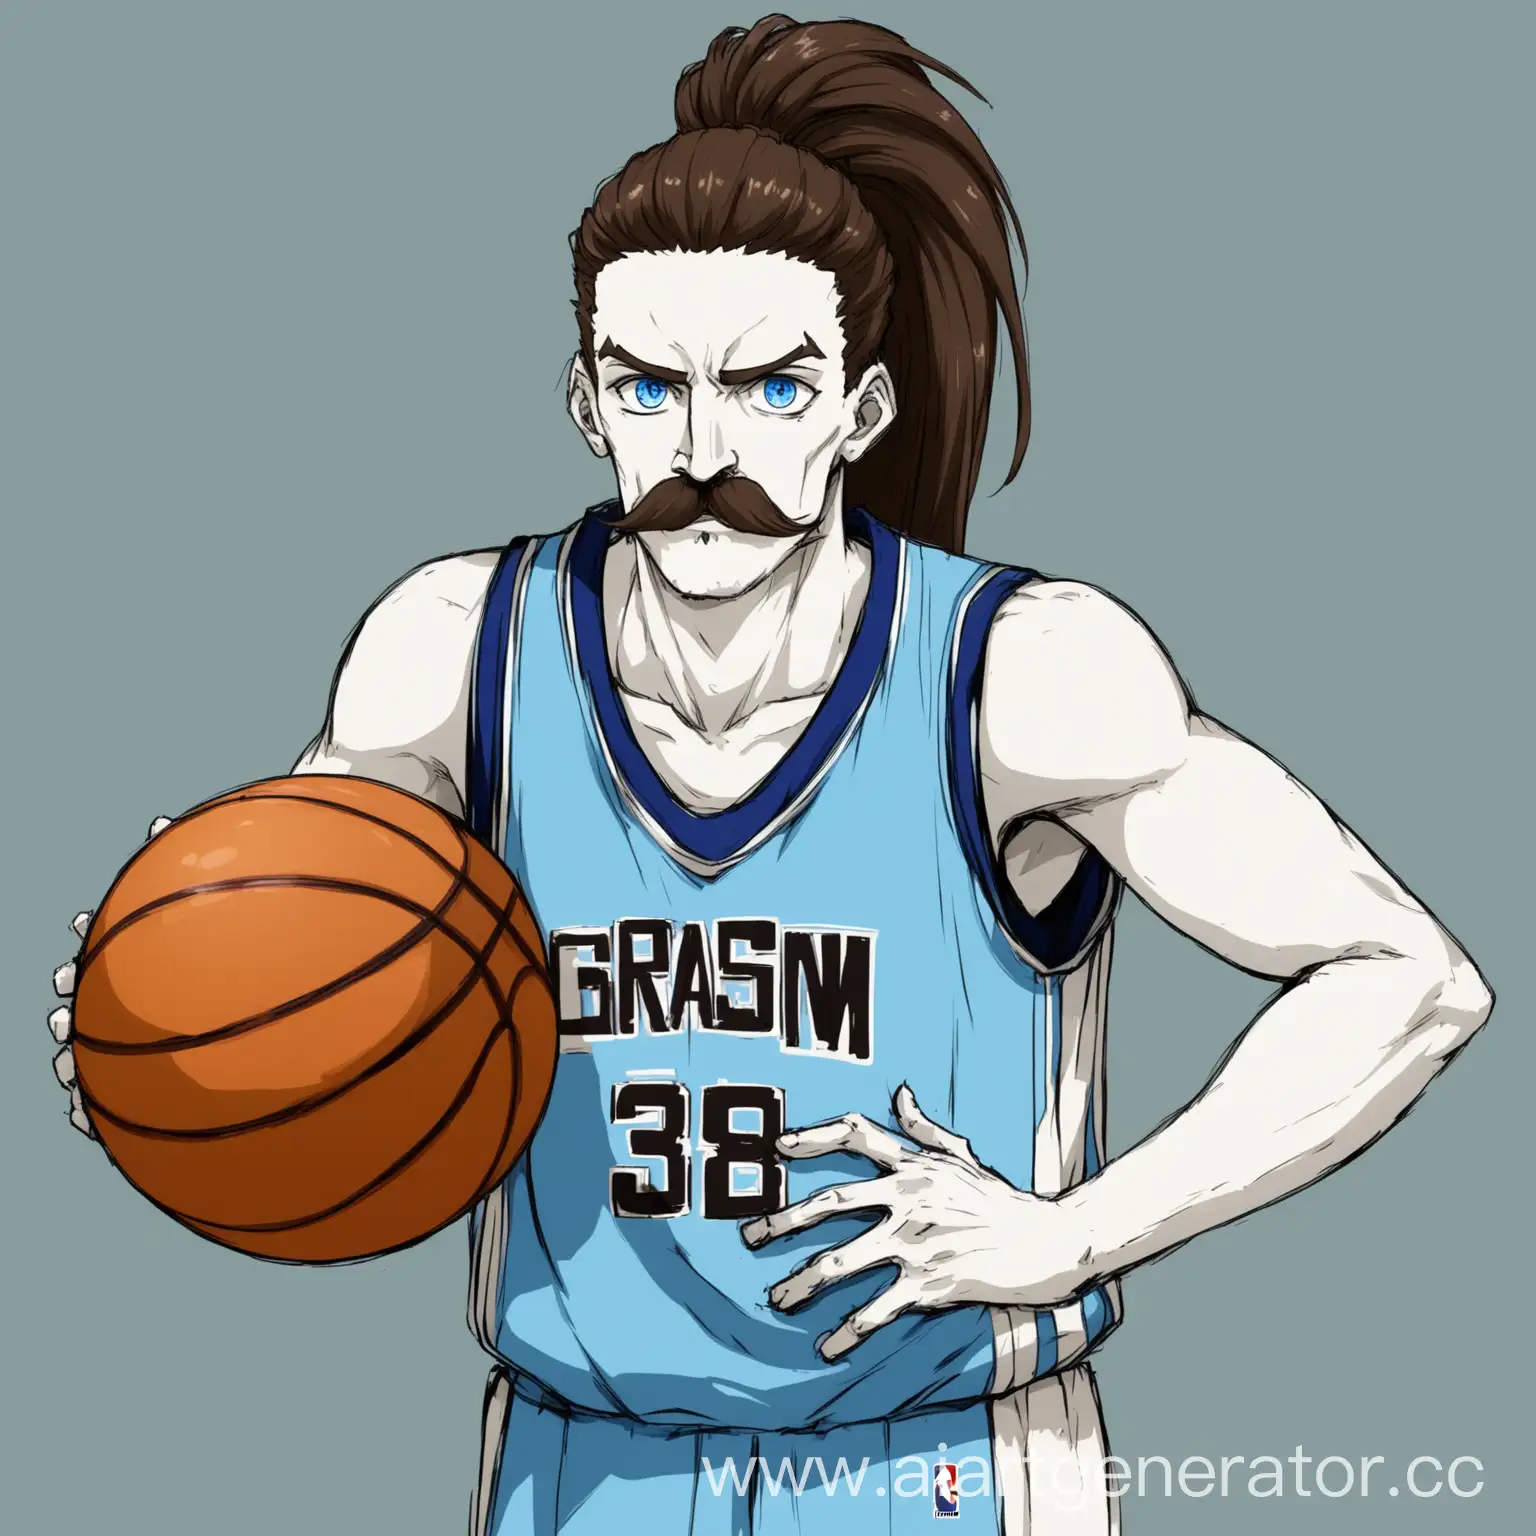 Высокий, широкий баскетболист, с белой кожей, длинные волосы в пучке, усы, голубые глаза, коричневые волосы, стиль аниме